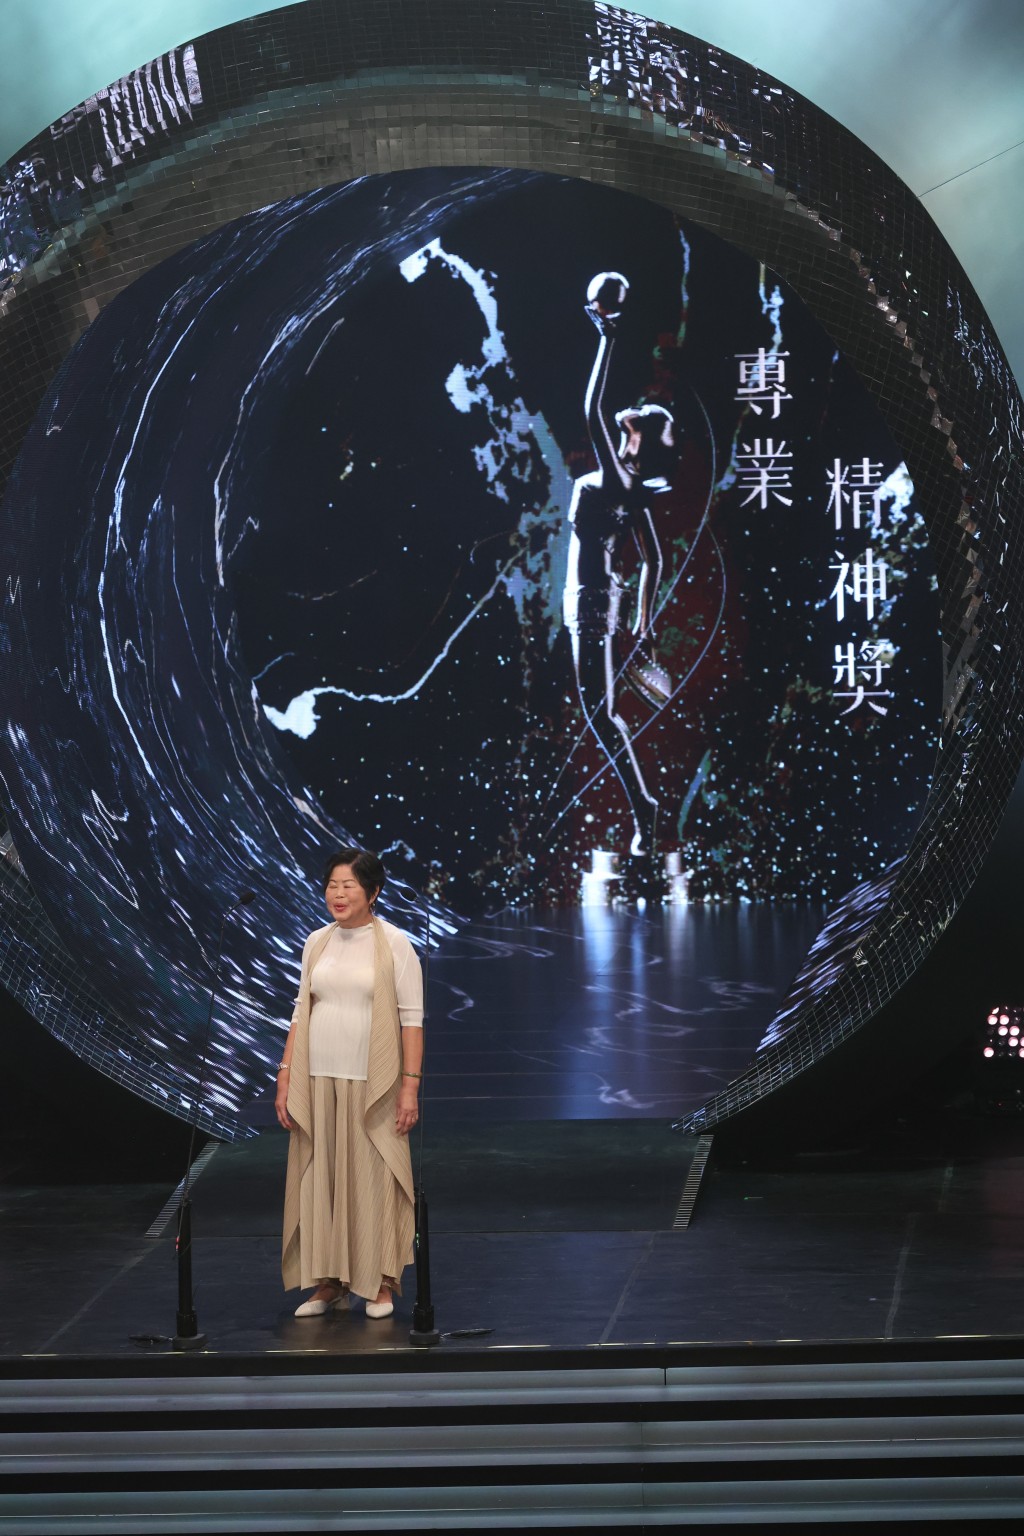 从事电影服装管理逾40年的「萍姐」唐萍获得「专业精神奖」。